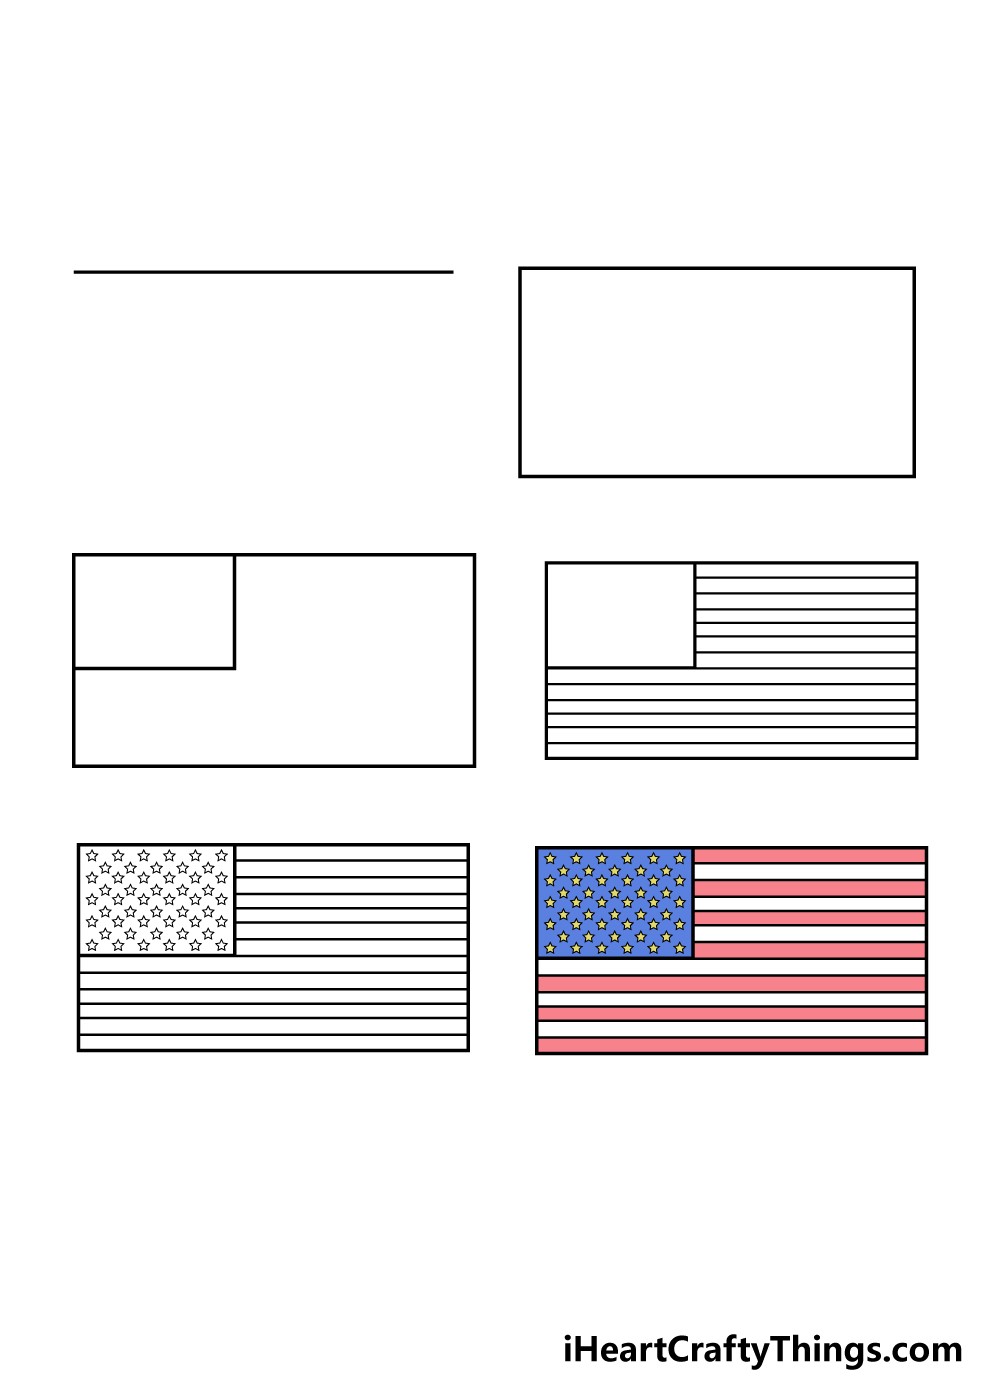 American Flag idea 2 Drawing Ideas